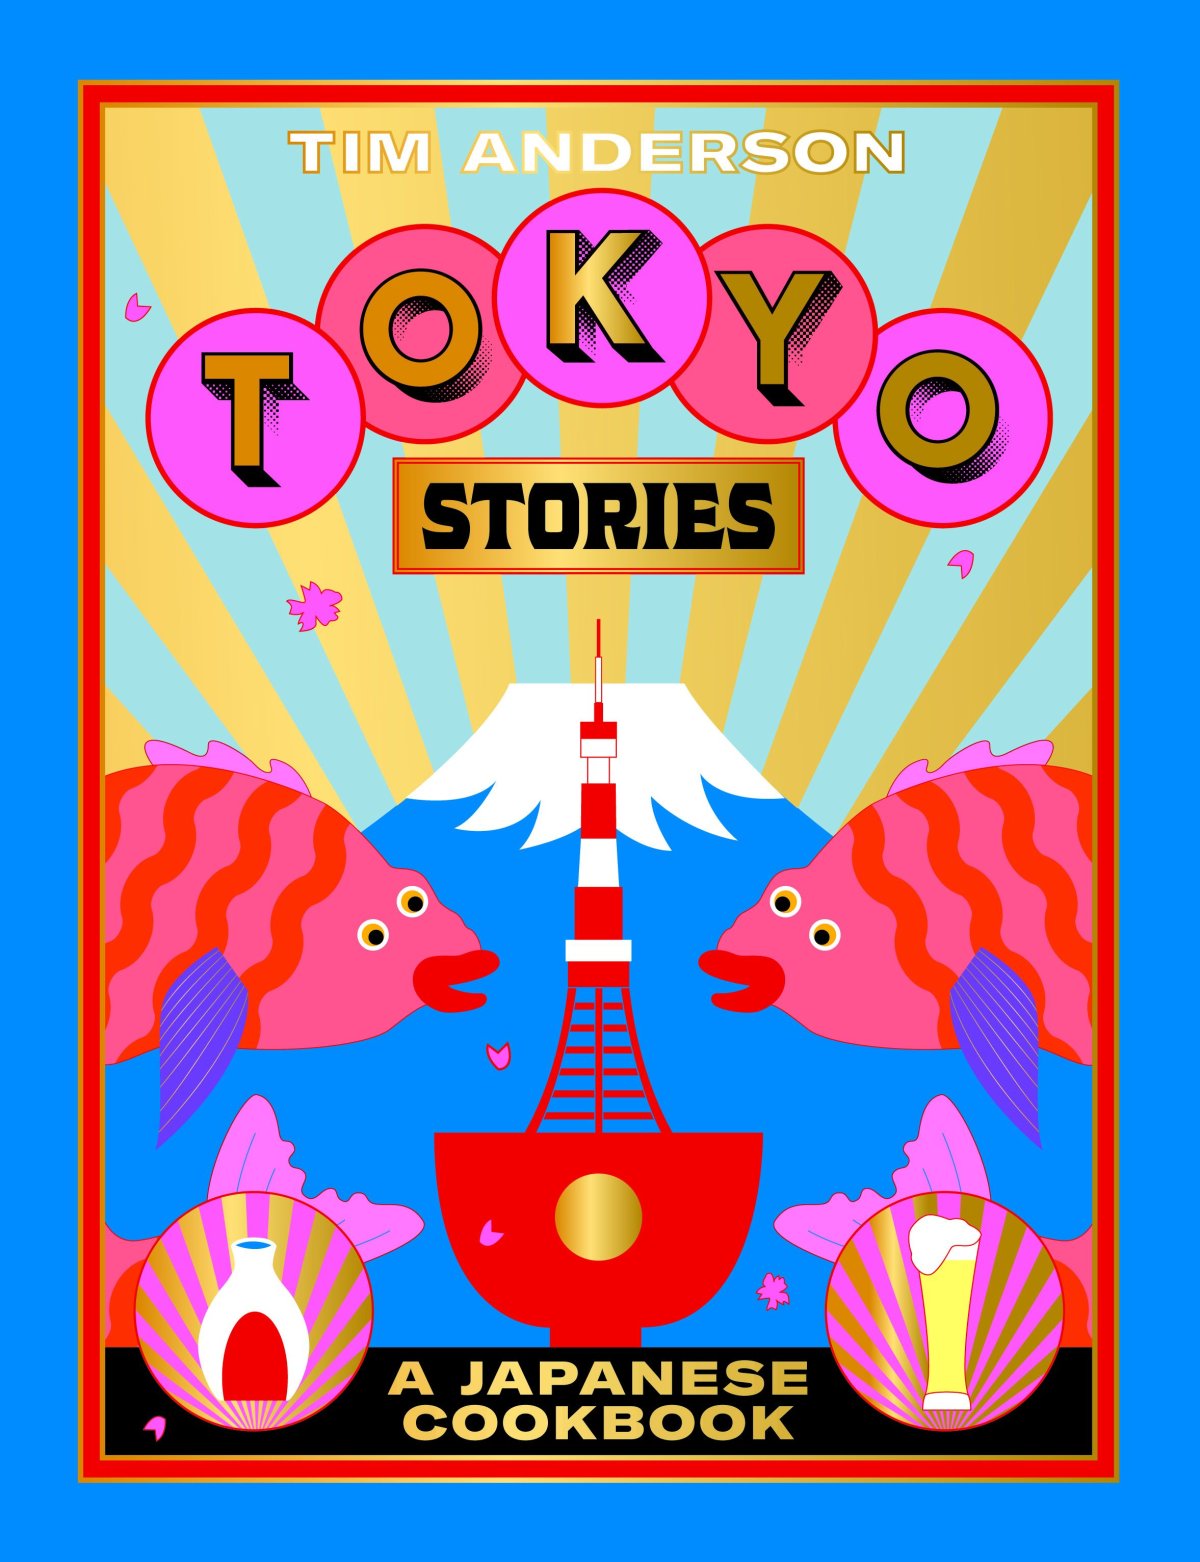 TokyoStories_fullsize